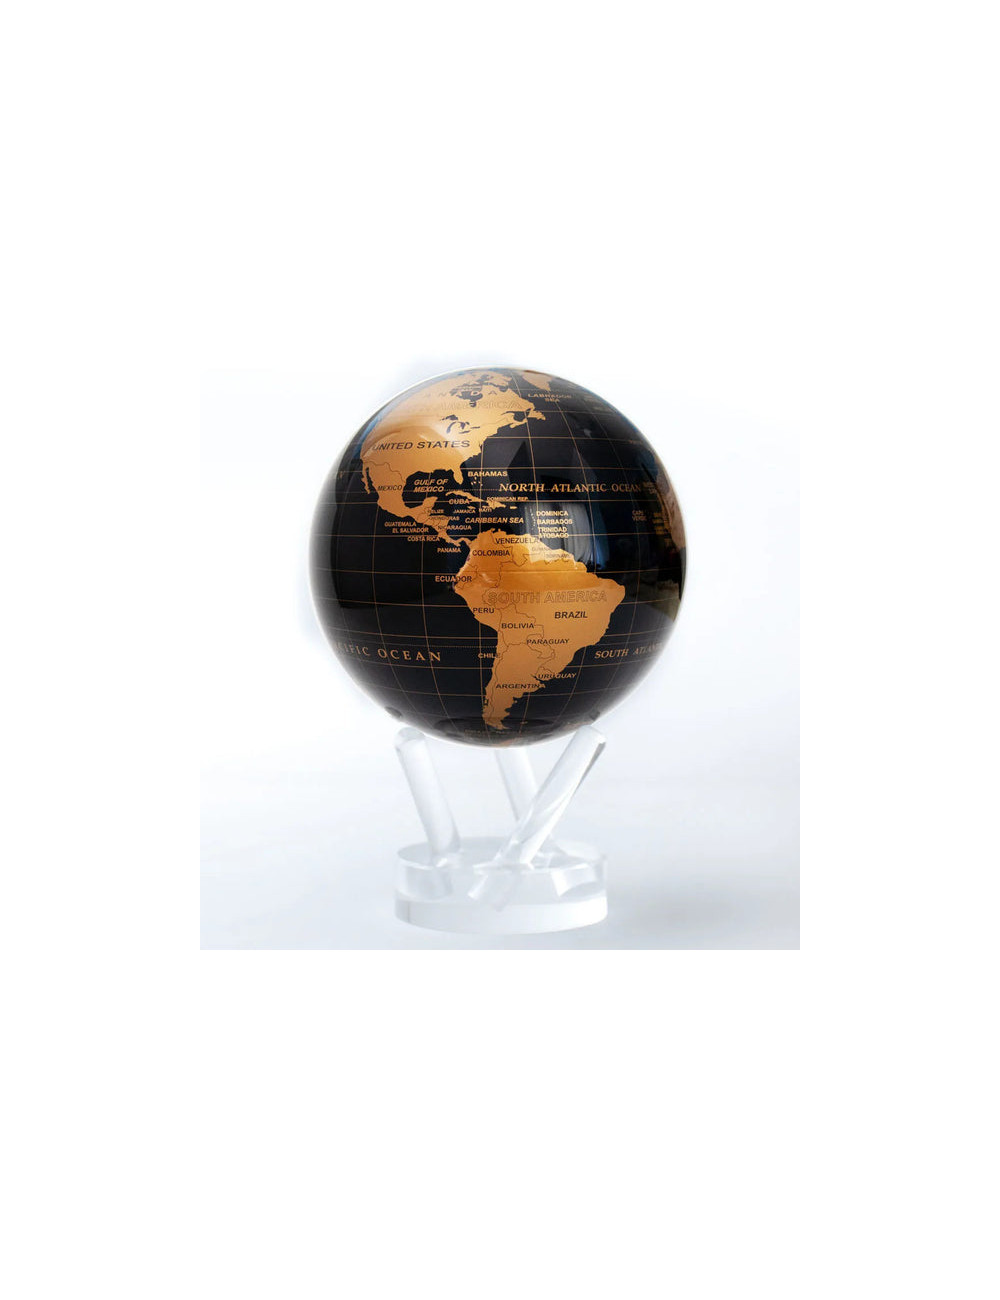 La terre-mère - Mova globe - Diffusion Rosicrucienne